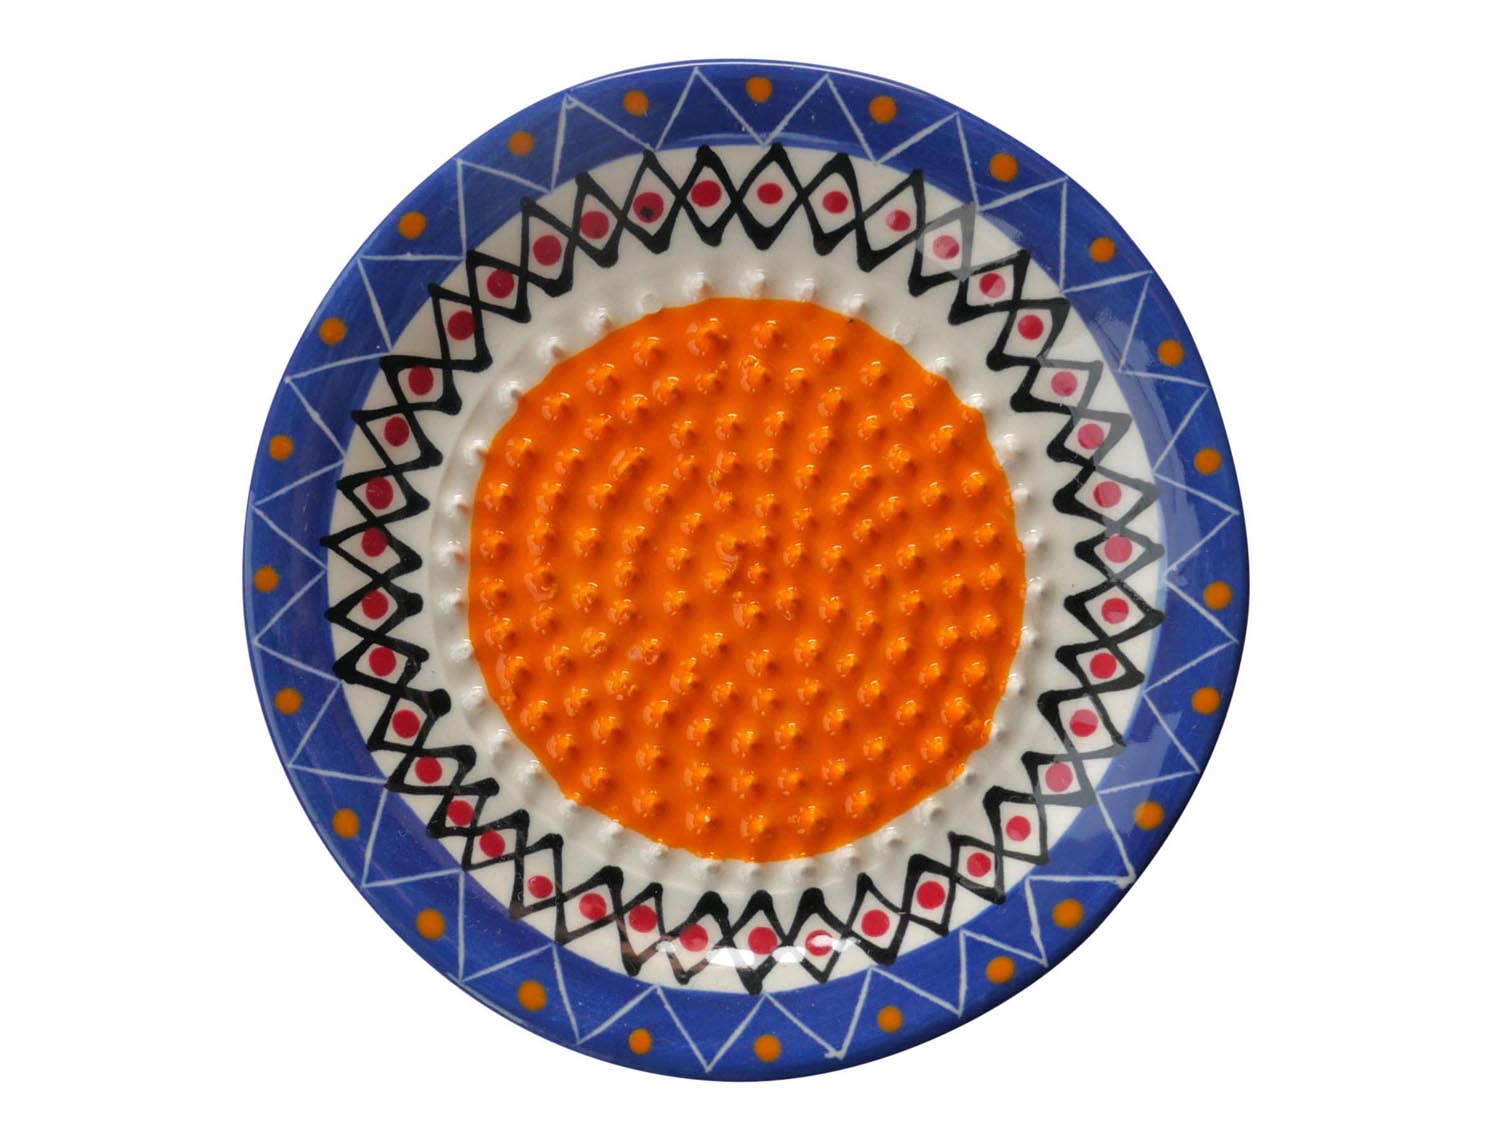 Keramikreibe - bemalte Reibe für Ingwer und Knoblauch - blau, orange